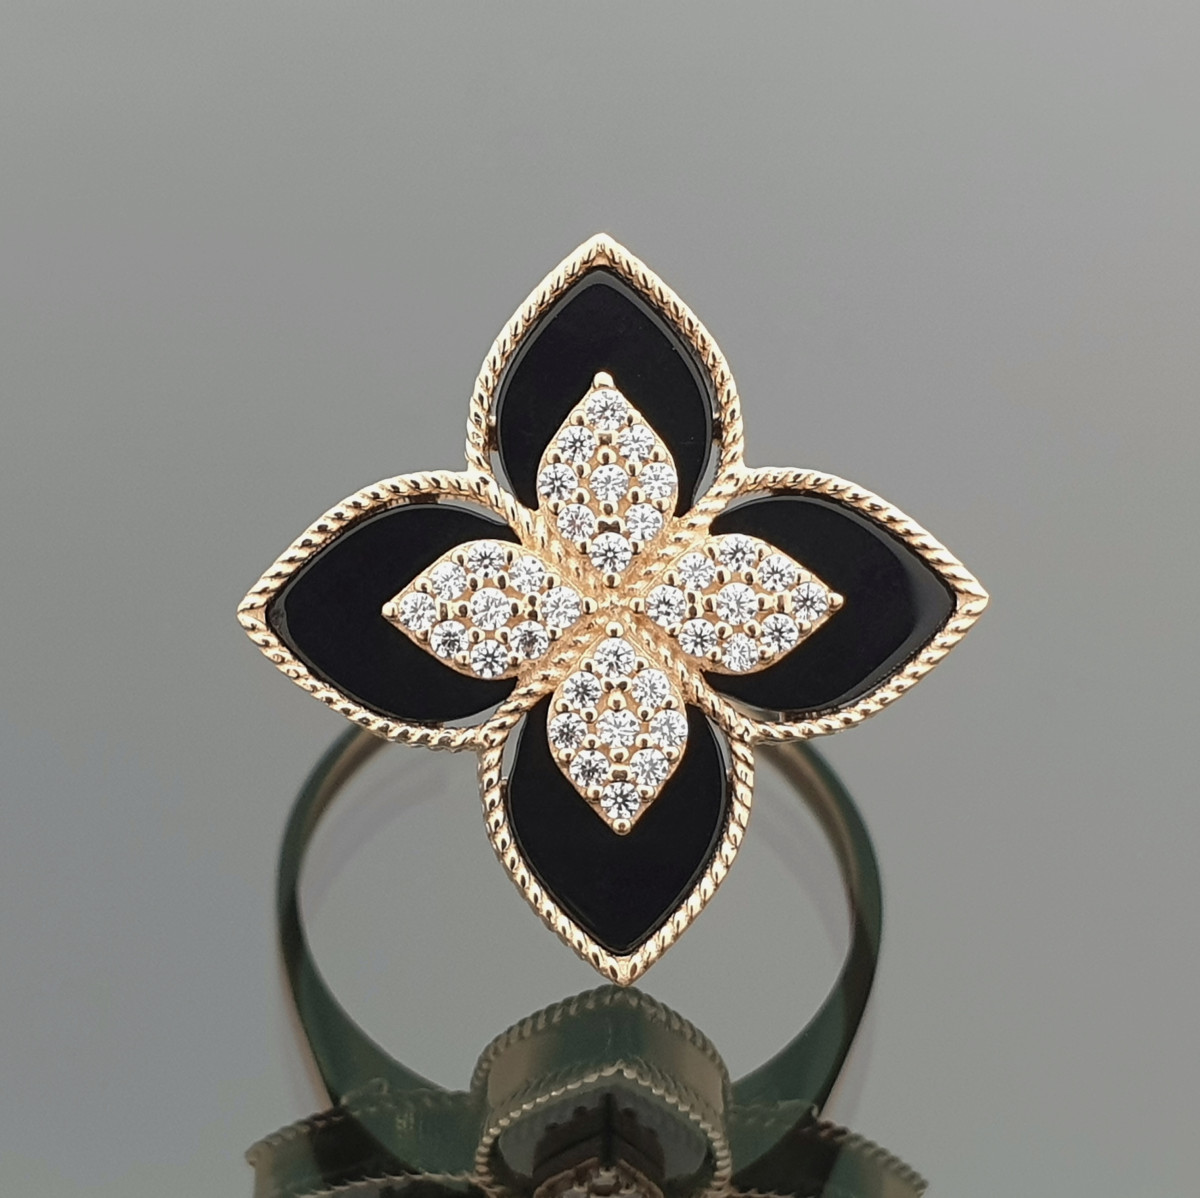 Moteriškas auksinis žiedas "Juoda gėlė" (1279)